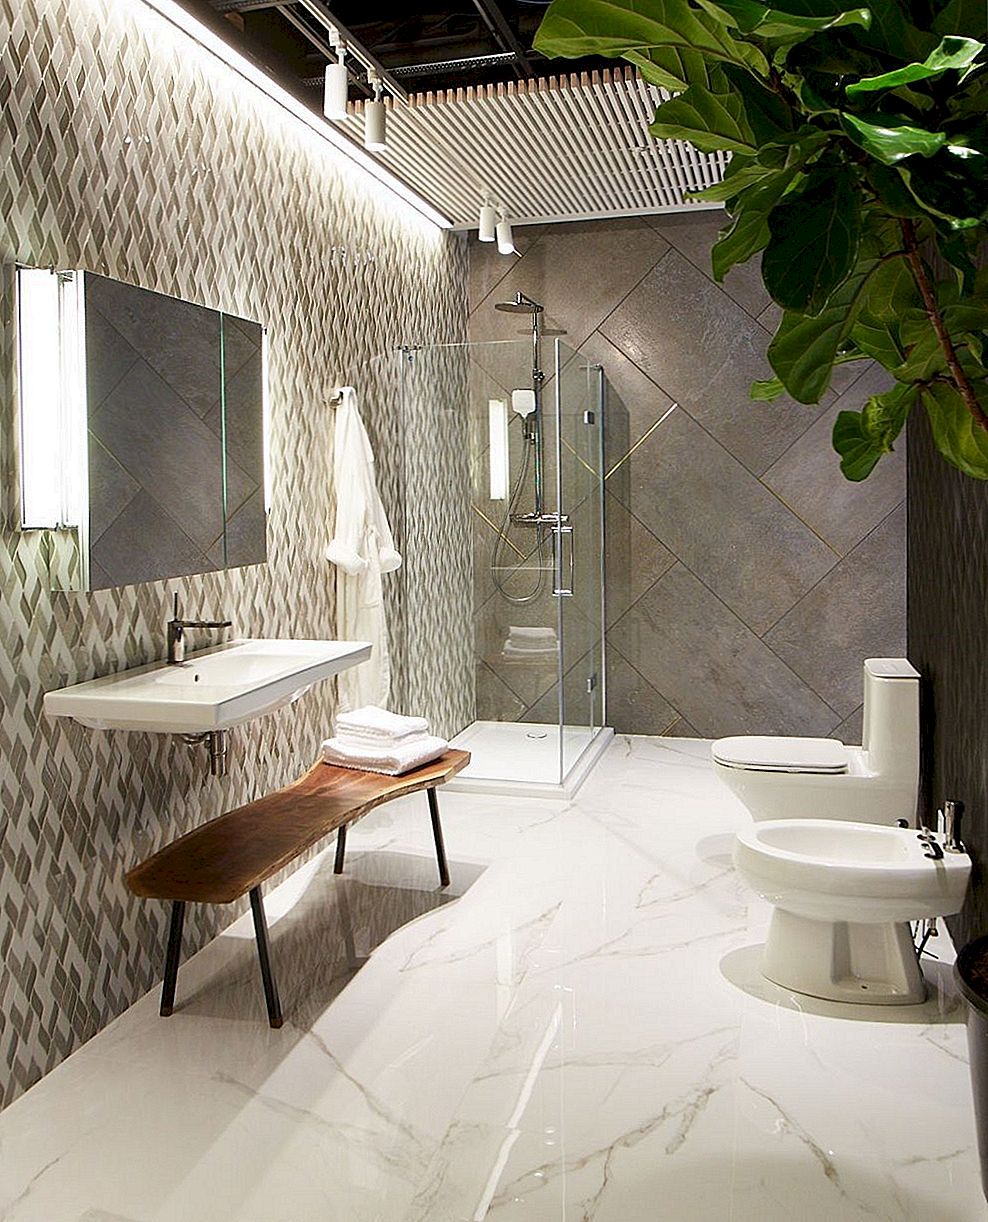 10 praustuvių dušo dizaino elementai atnaujinti jūsų vonios kambarį